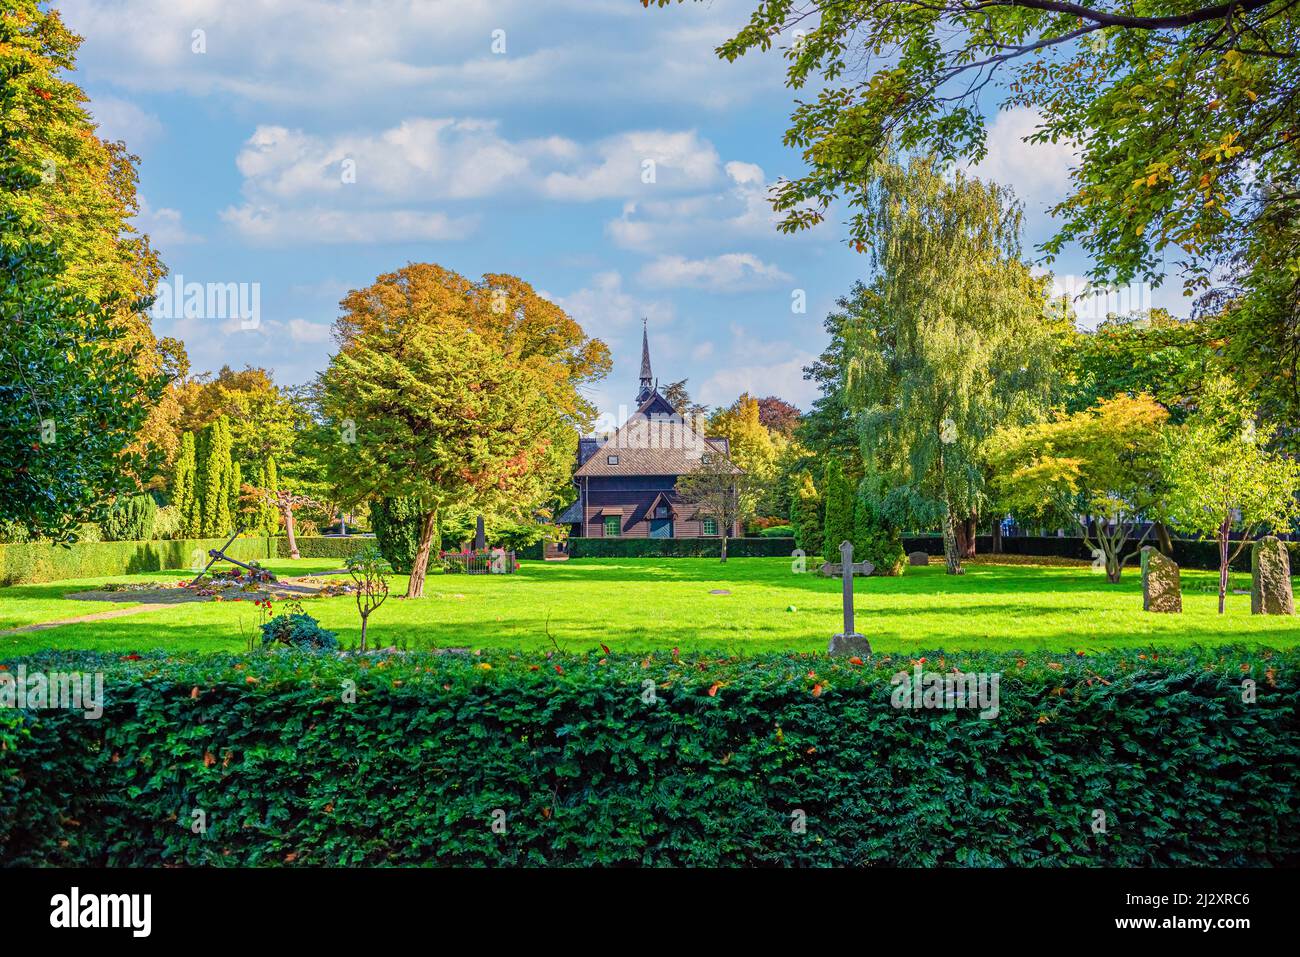 Viele grüne Bäume, Sträucher, Blumen und eine alte Kapelle auf dem Holmen Friedhof. Kopenhagen, Dänemark Stockfoto